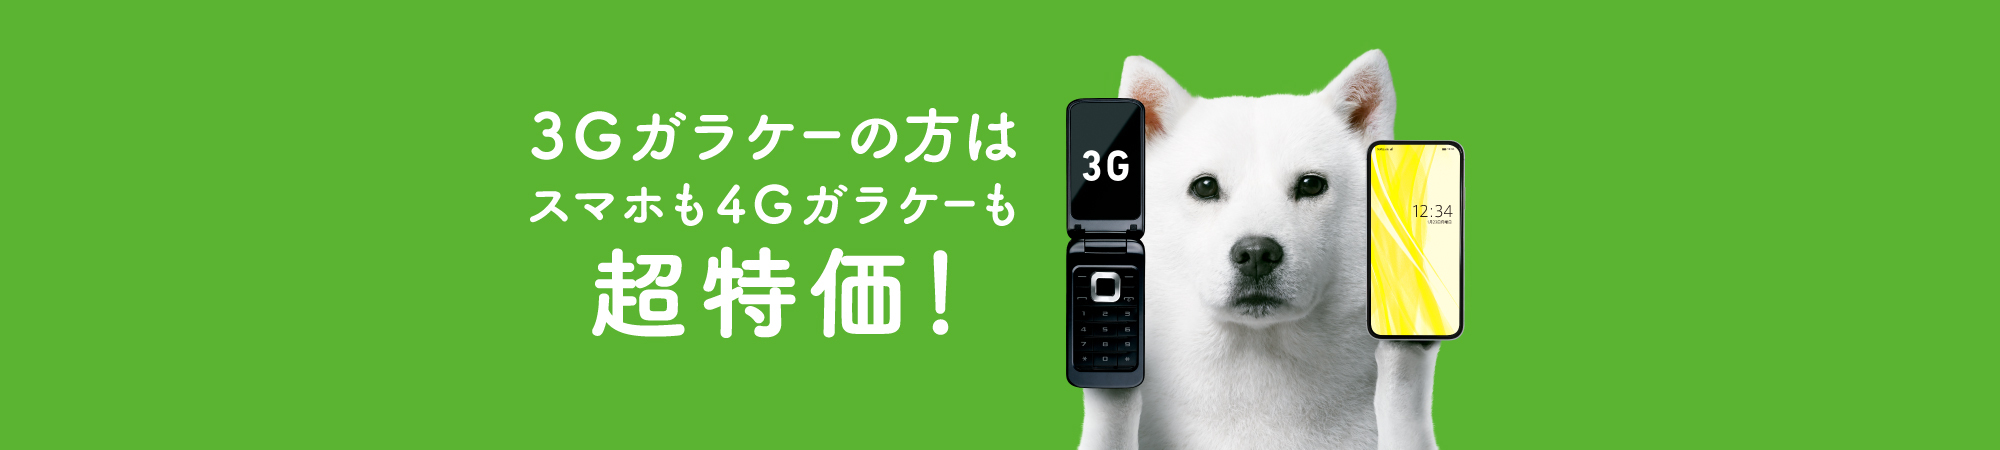 3G買い替えキャンペーン